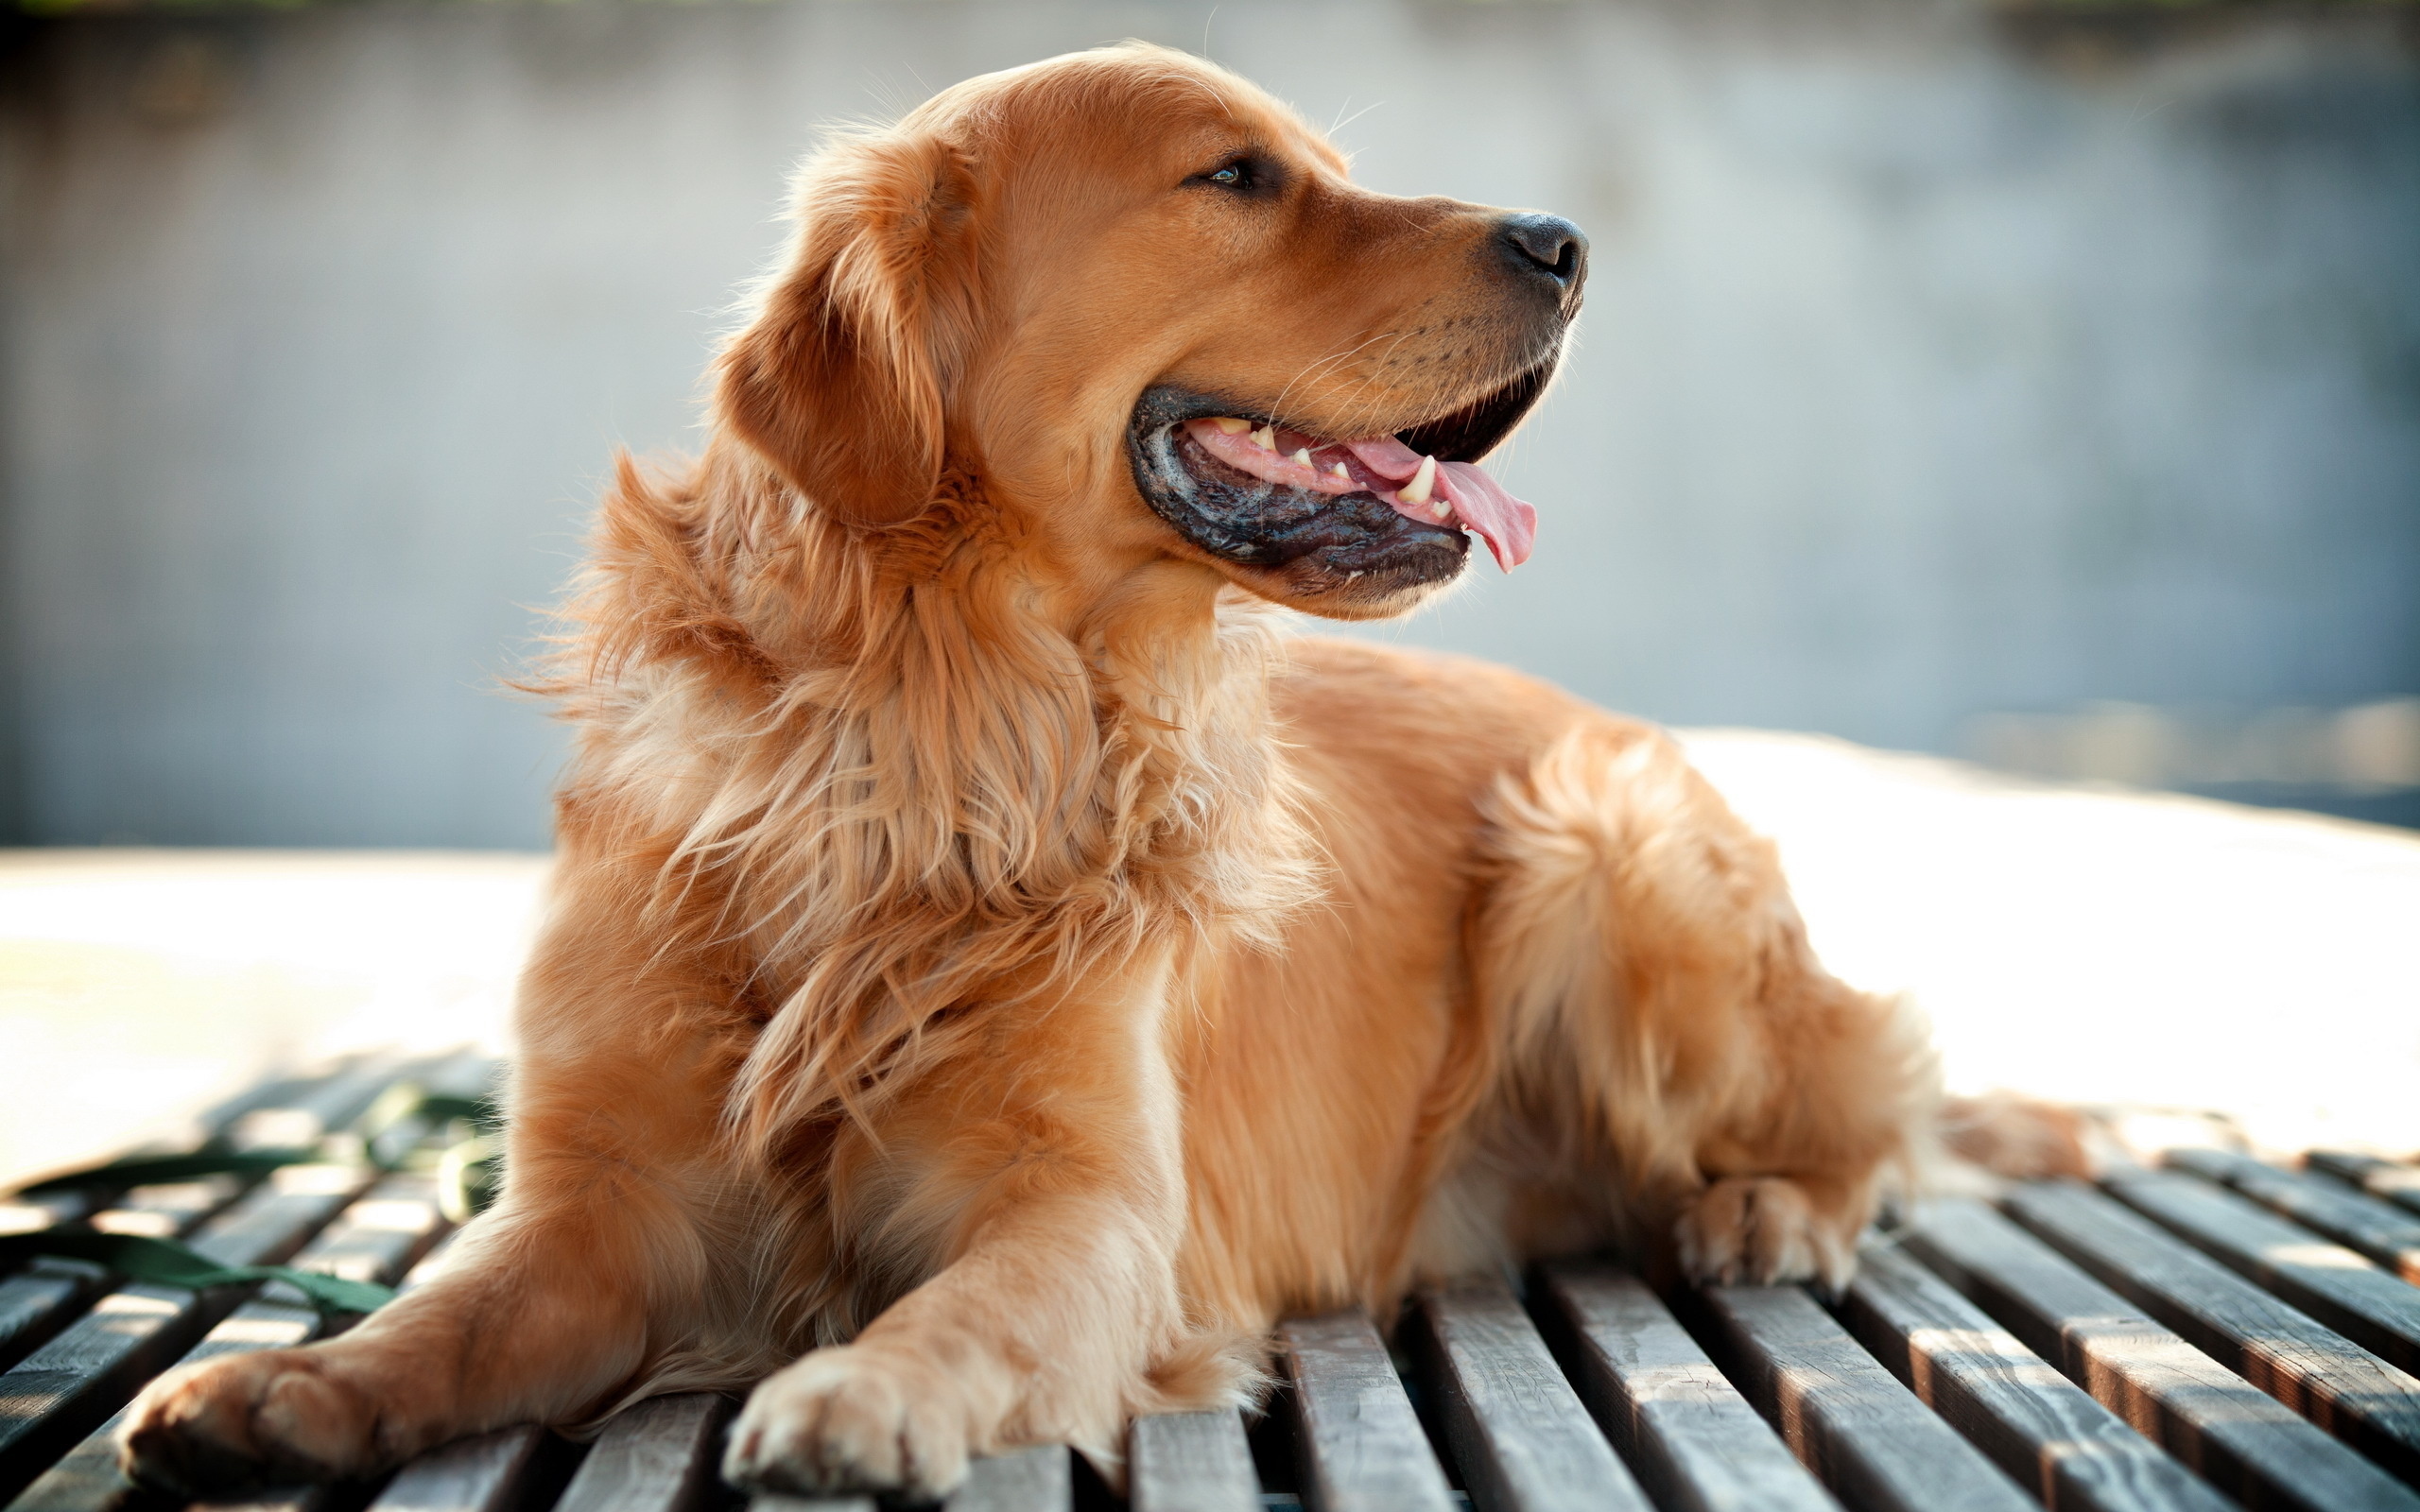 Golden Retriever Dog1233814909 - Golden Retriever Dog - Sumatran, Retriever, Golden, Dog